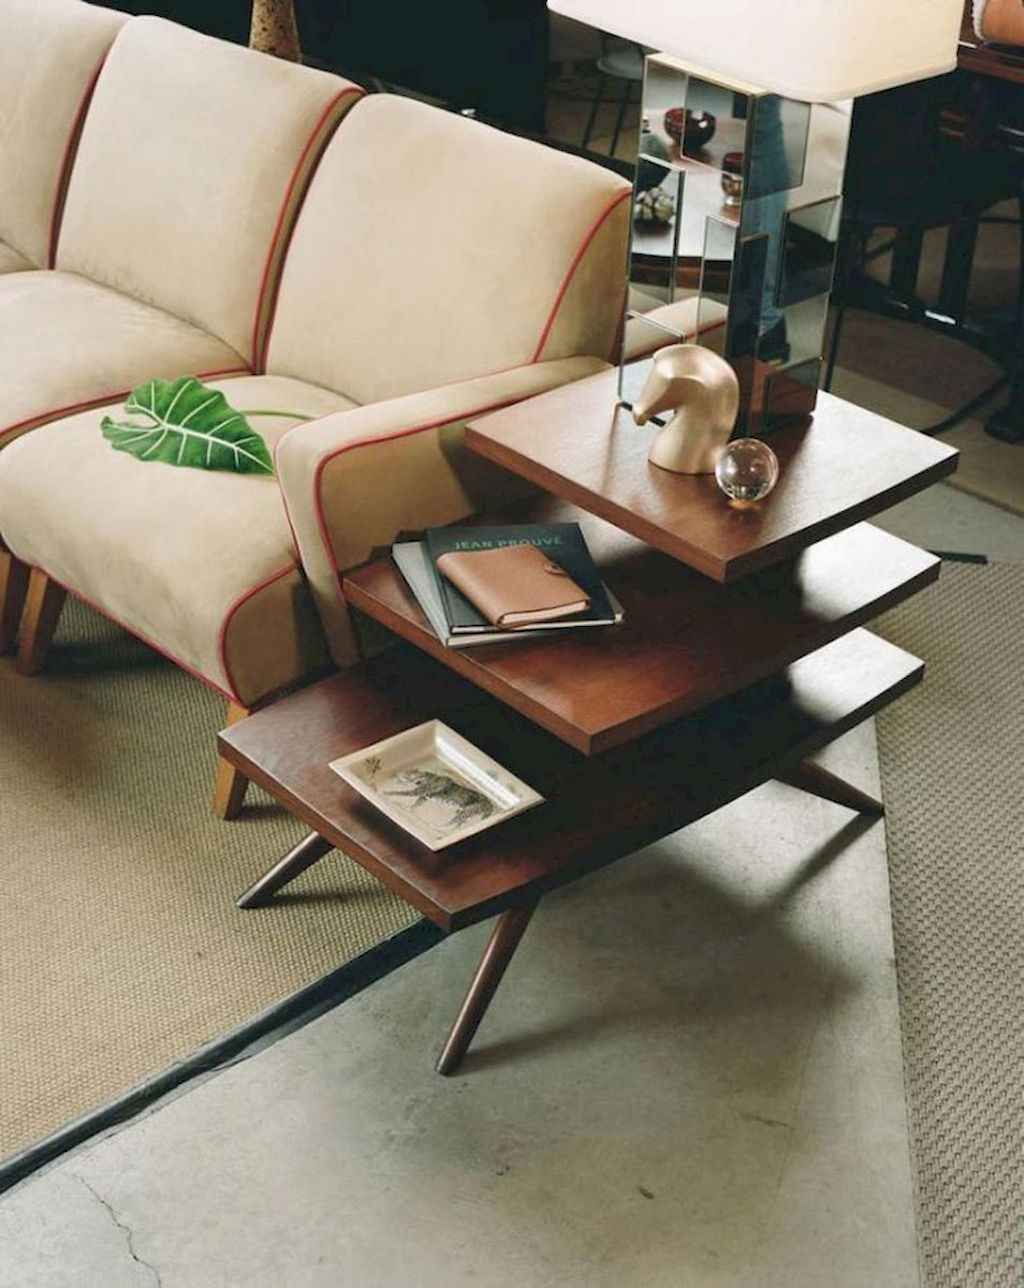 Trends In Modern Furniture Design